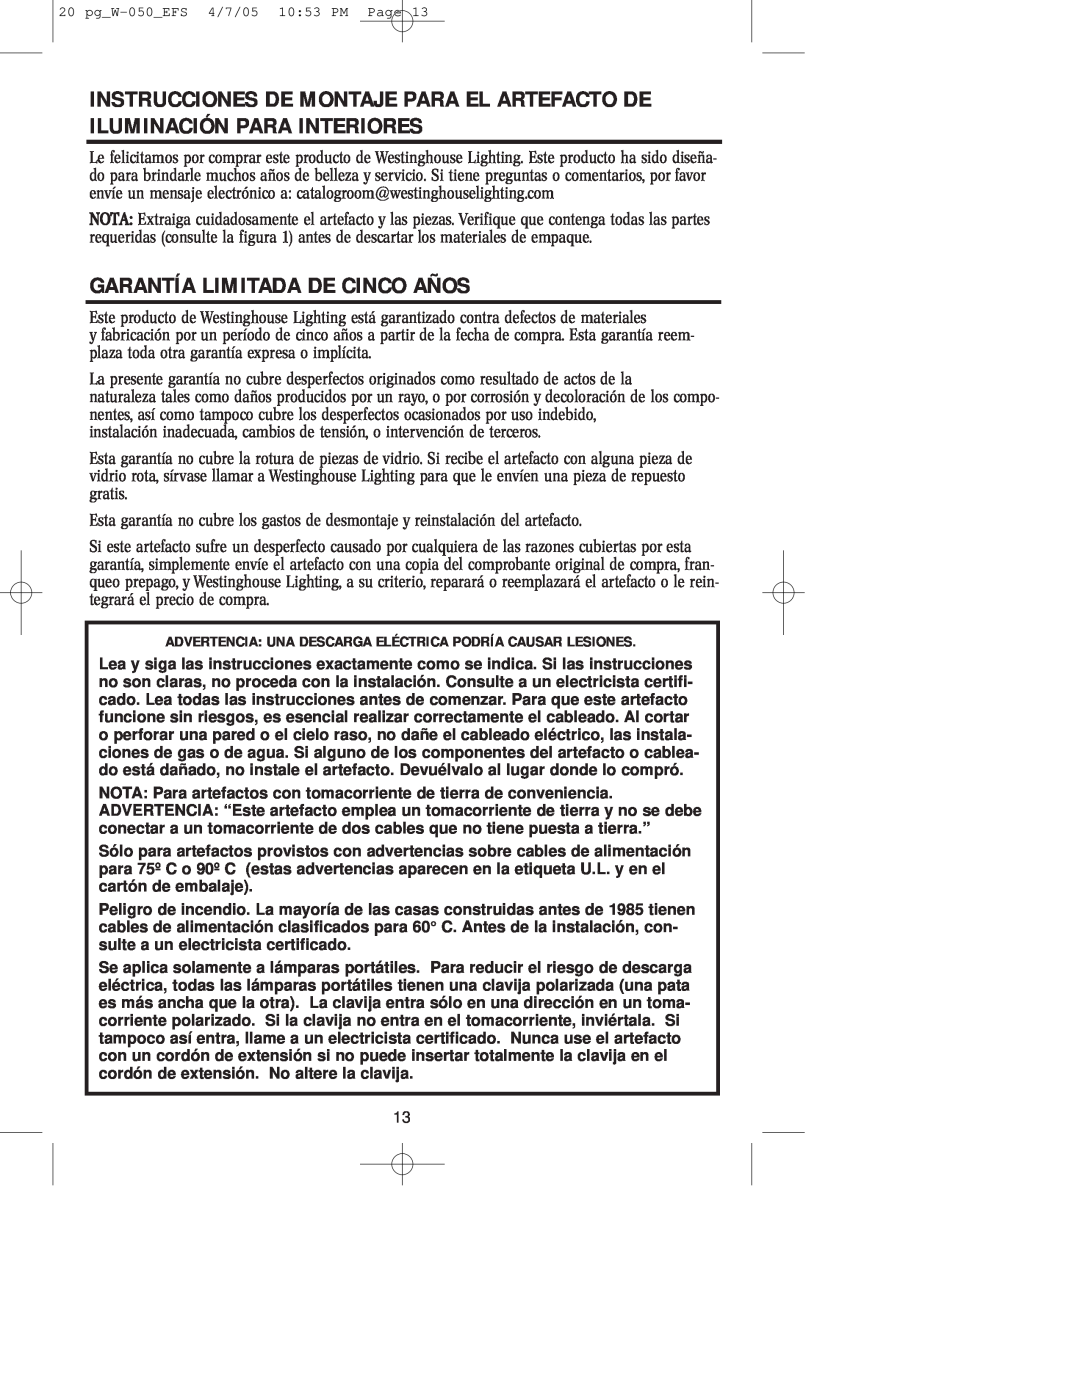 Westinghouse W-050 owner manual Garantía Limitada De Cinco Años 